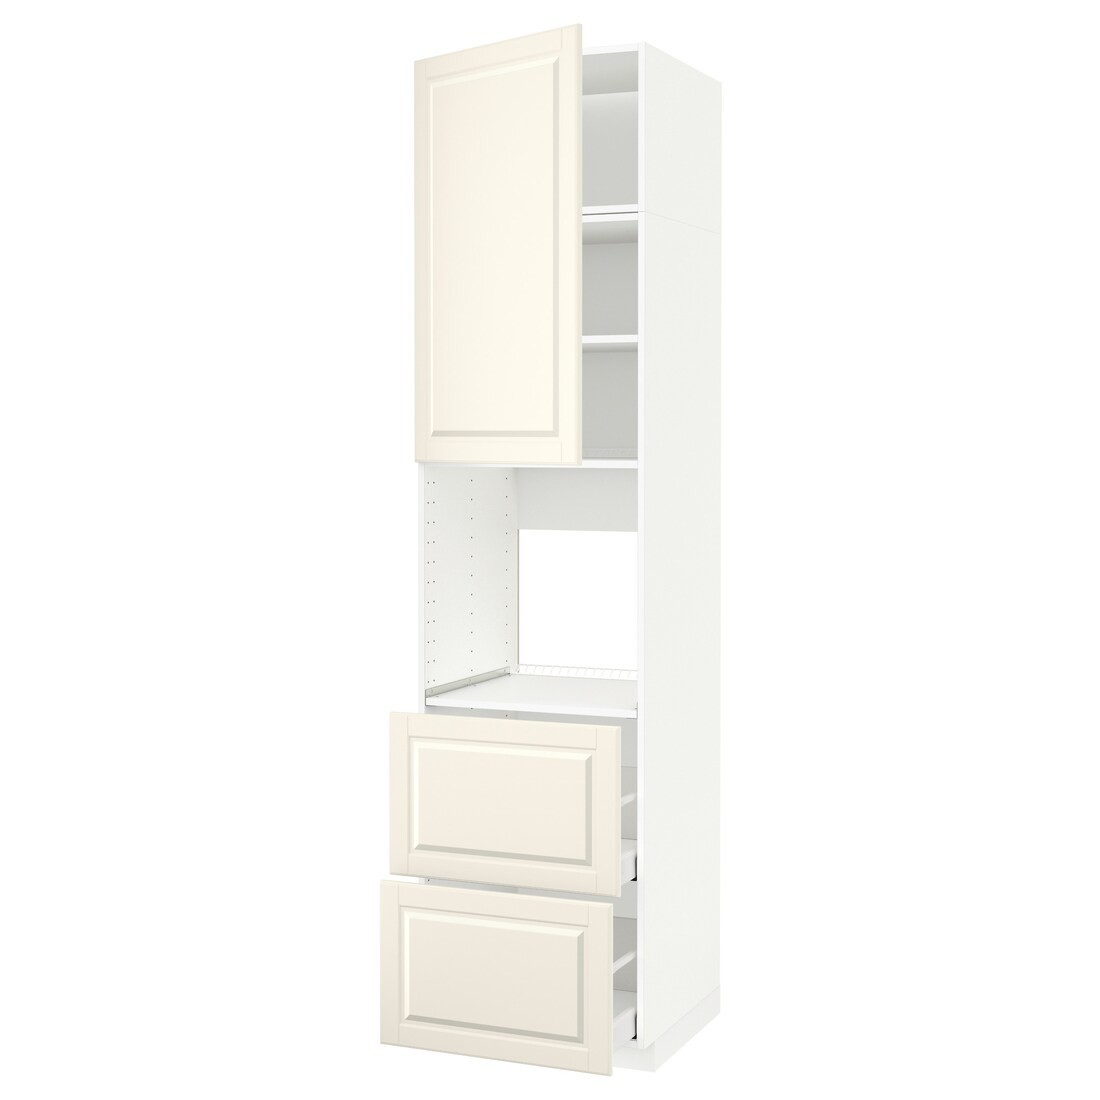 IKEA METOD МЕТОД / MAXIMERA МАКСИМЕРА Высокий шкаф для духовки, белый / Bodbyn кремовый, 60x60x240 см 99464227 | 994.642.27